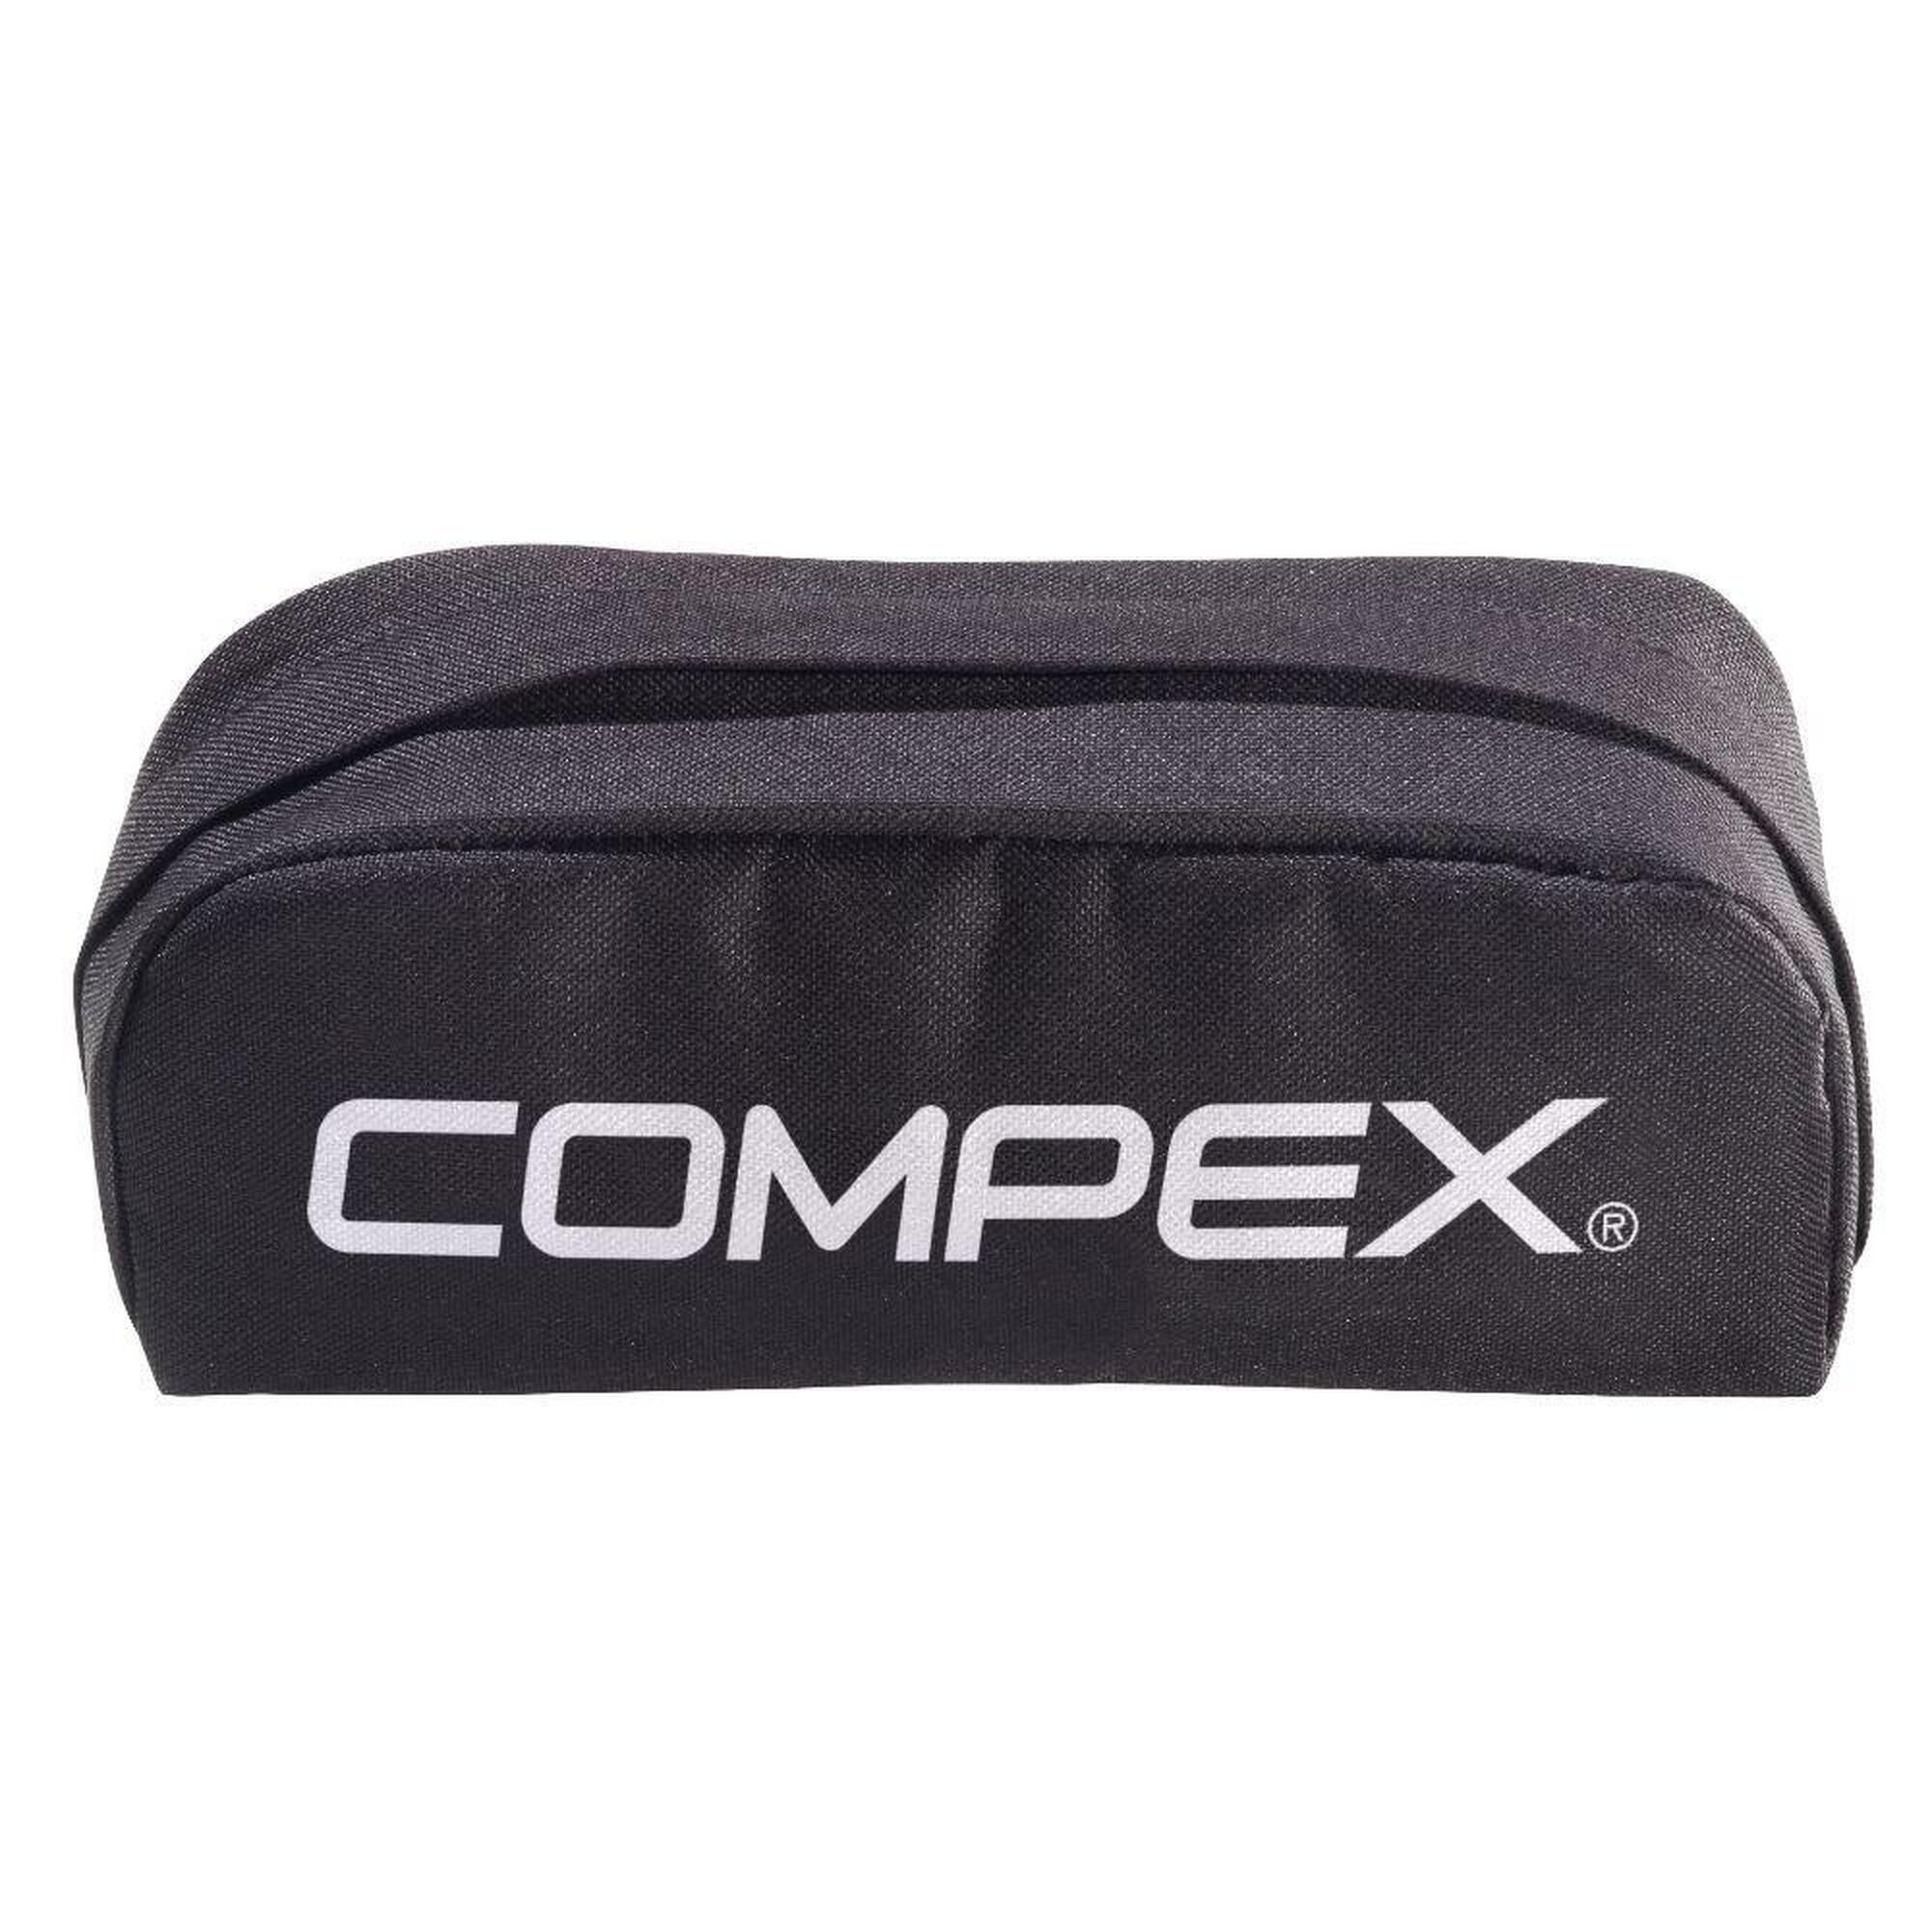 COMPEX Compex Travel pouch wireless